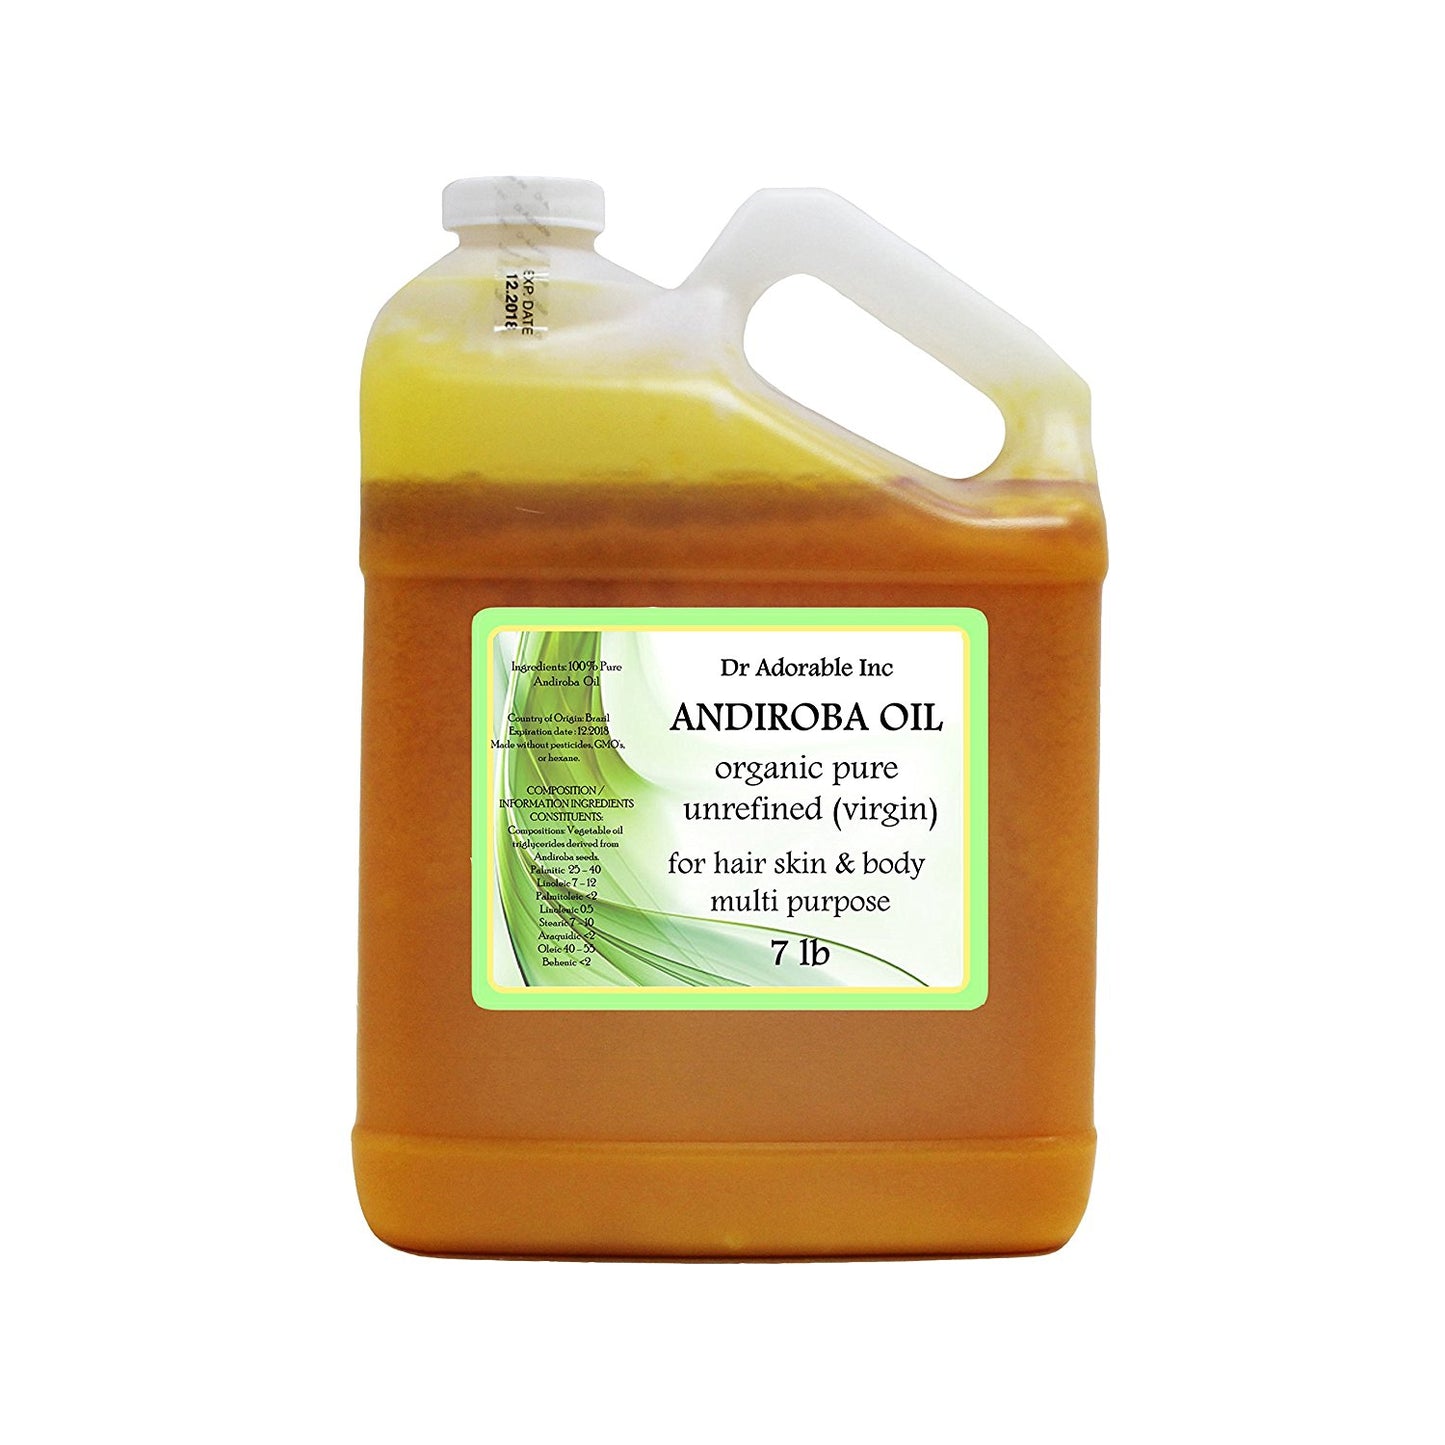 Andiroba Oil - 100% Pure Exotic Brazilian Organic